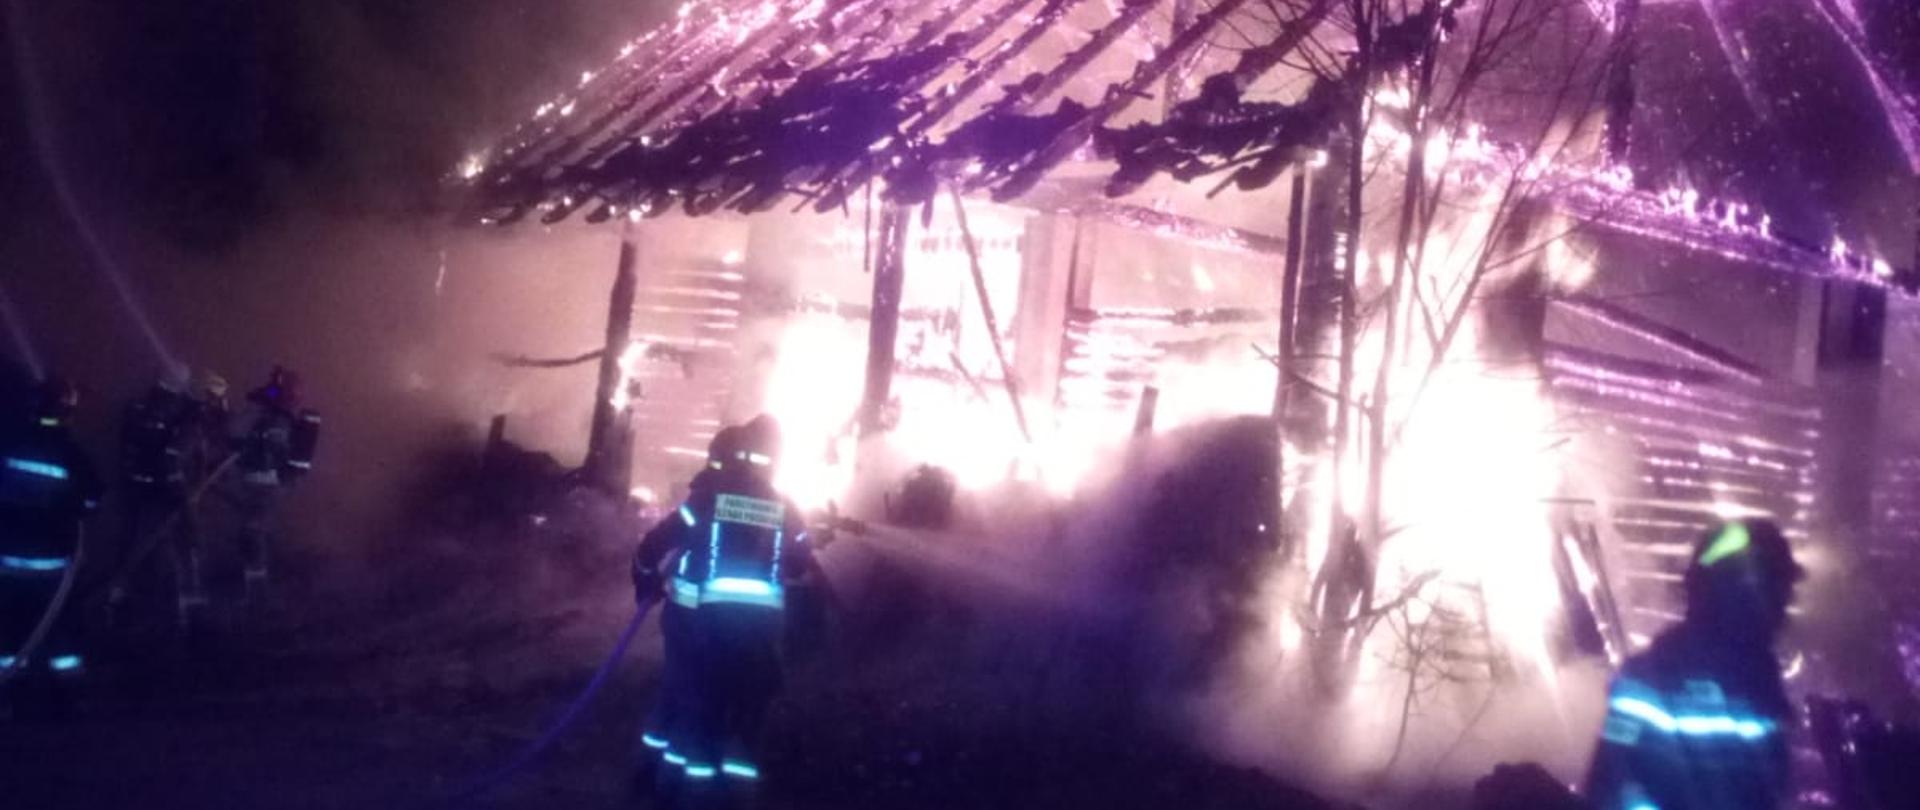 Zdjęcie przedstawia palący się budynek gospodarczy oraz strażaków podających prądy wody.